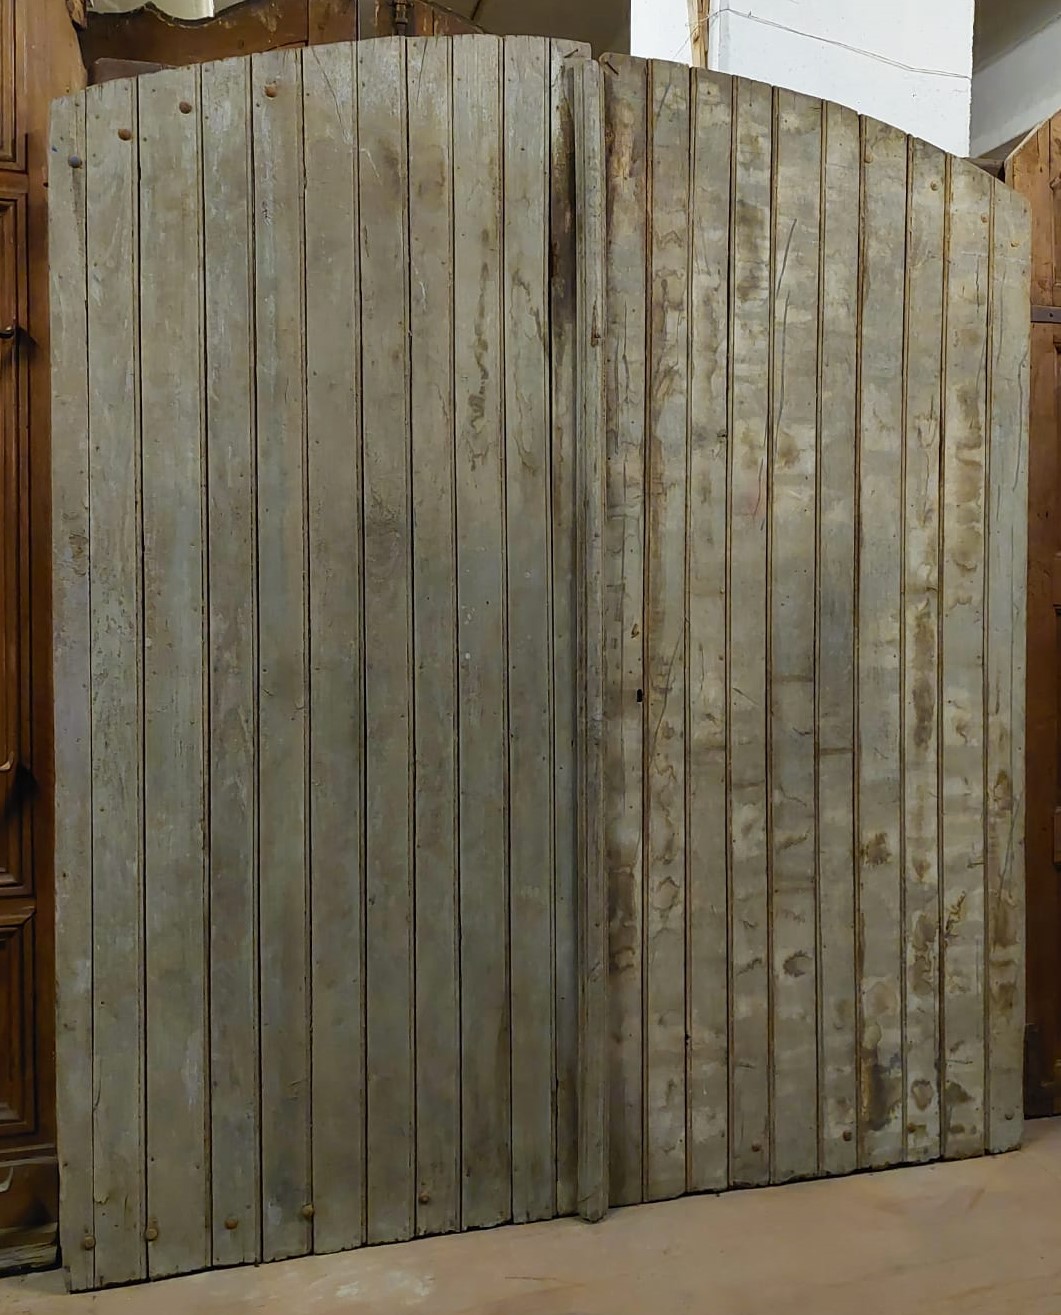 ptn256 - porte en bois, XIXe siècle, origine piémontaise, mes. cm l 220 x h 258 